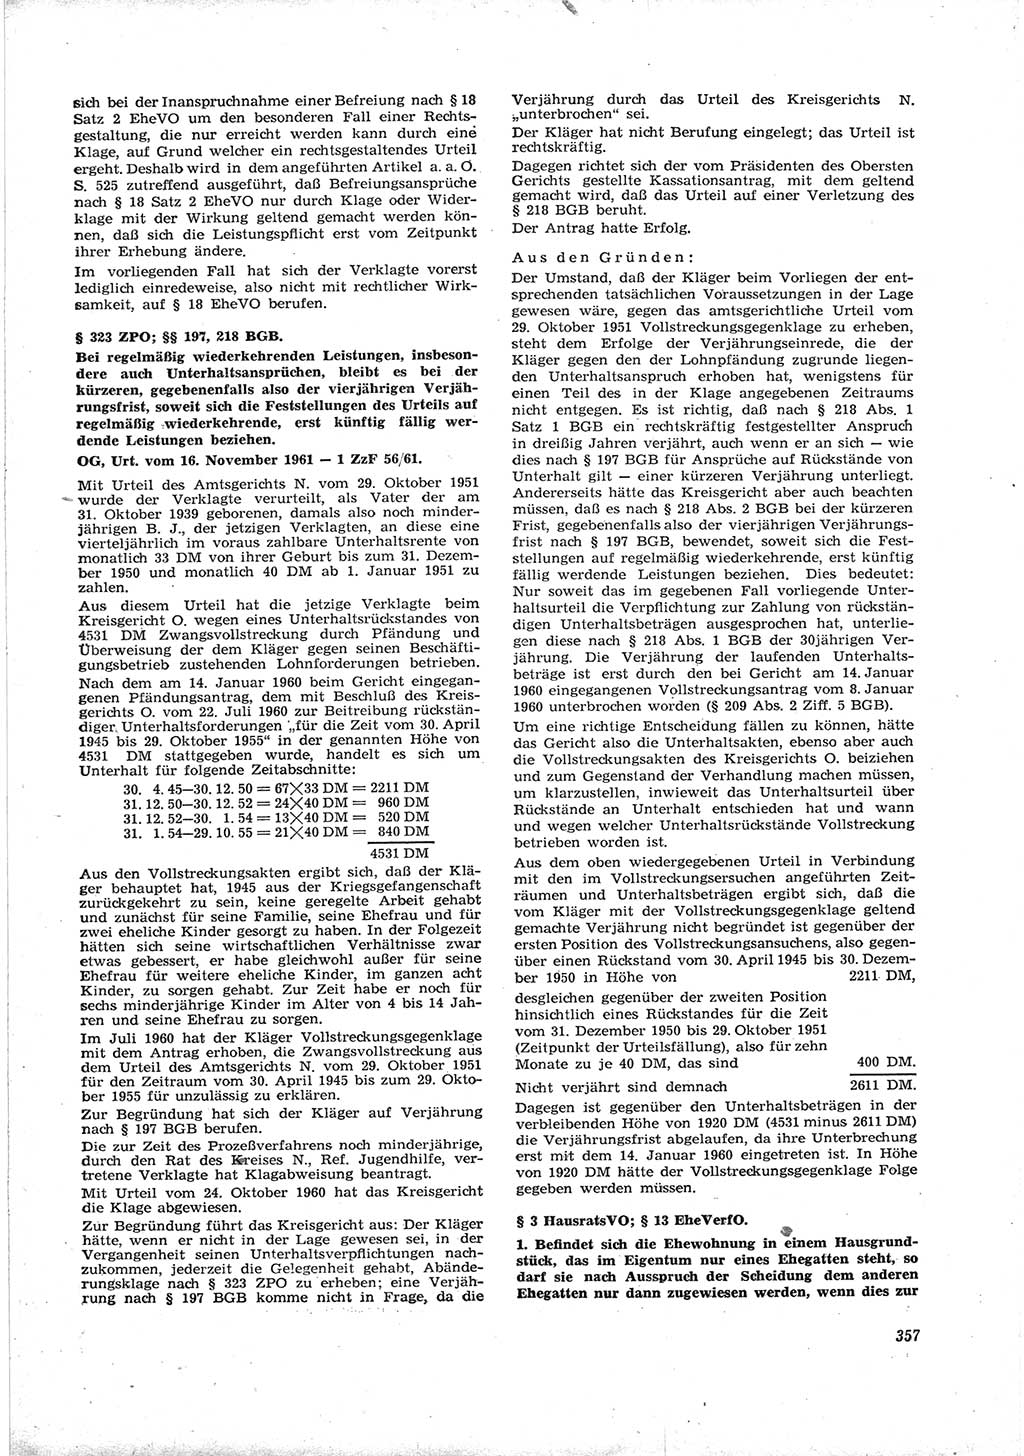 Neue Justiz (NJ), Zeitschrift für Recht und Rechtswissenschaft [Deutsche Demokratische Republik (DDR)], 16. Jahrgang 1962, Seite 357 (NJ DDR 1962, S. 357)